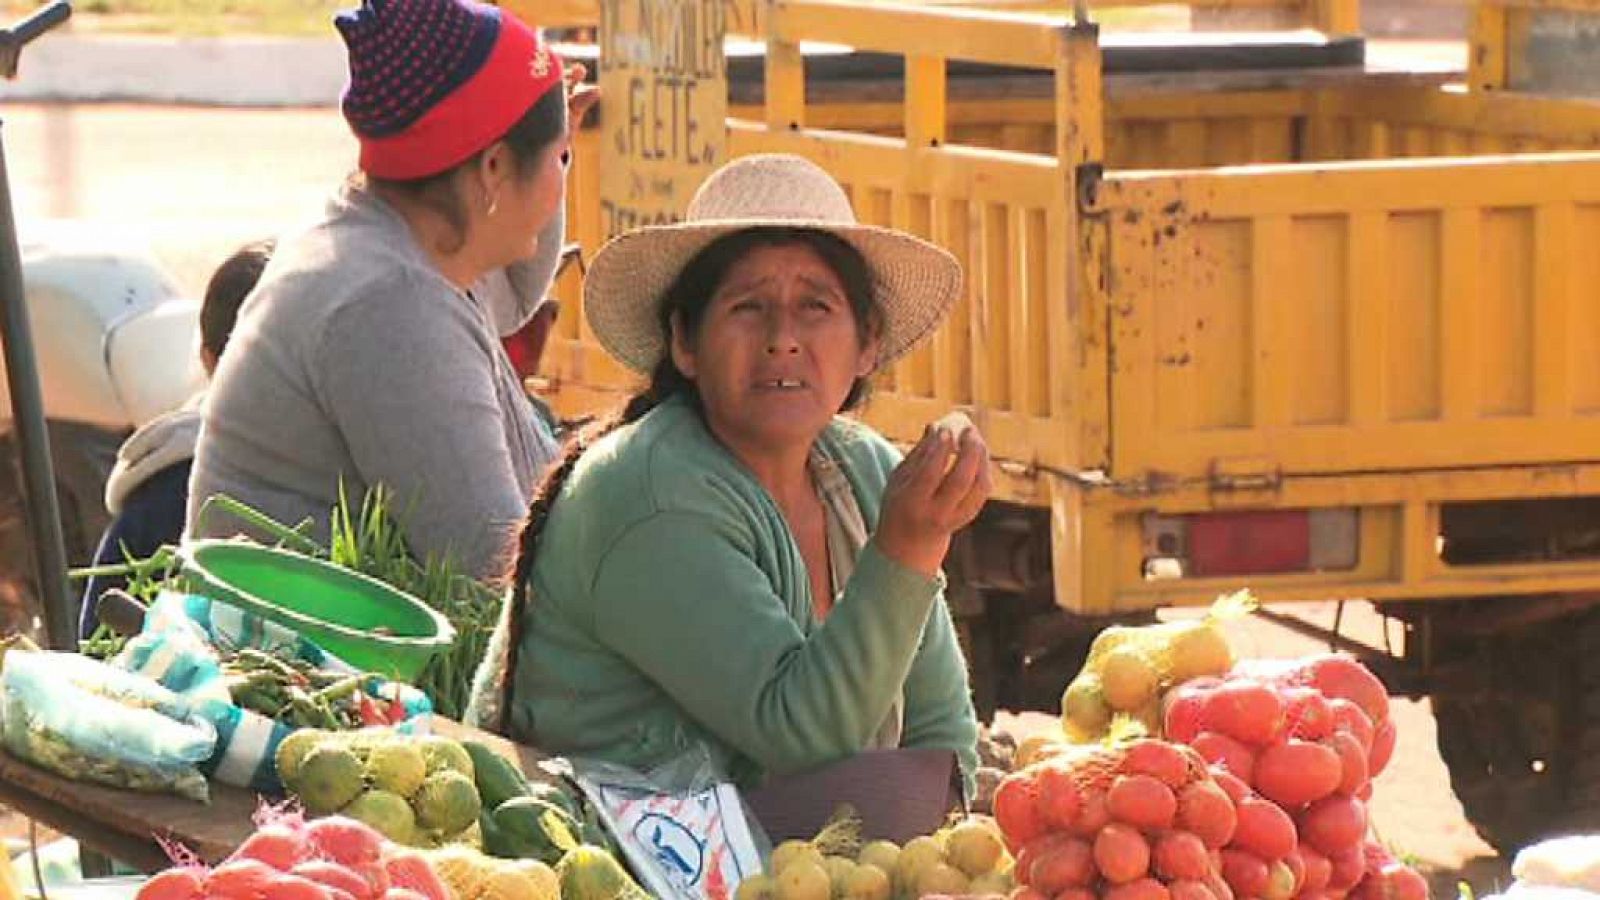 Pueblo de Dios - Bolivia: sembrar esperanza